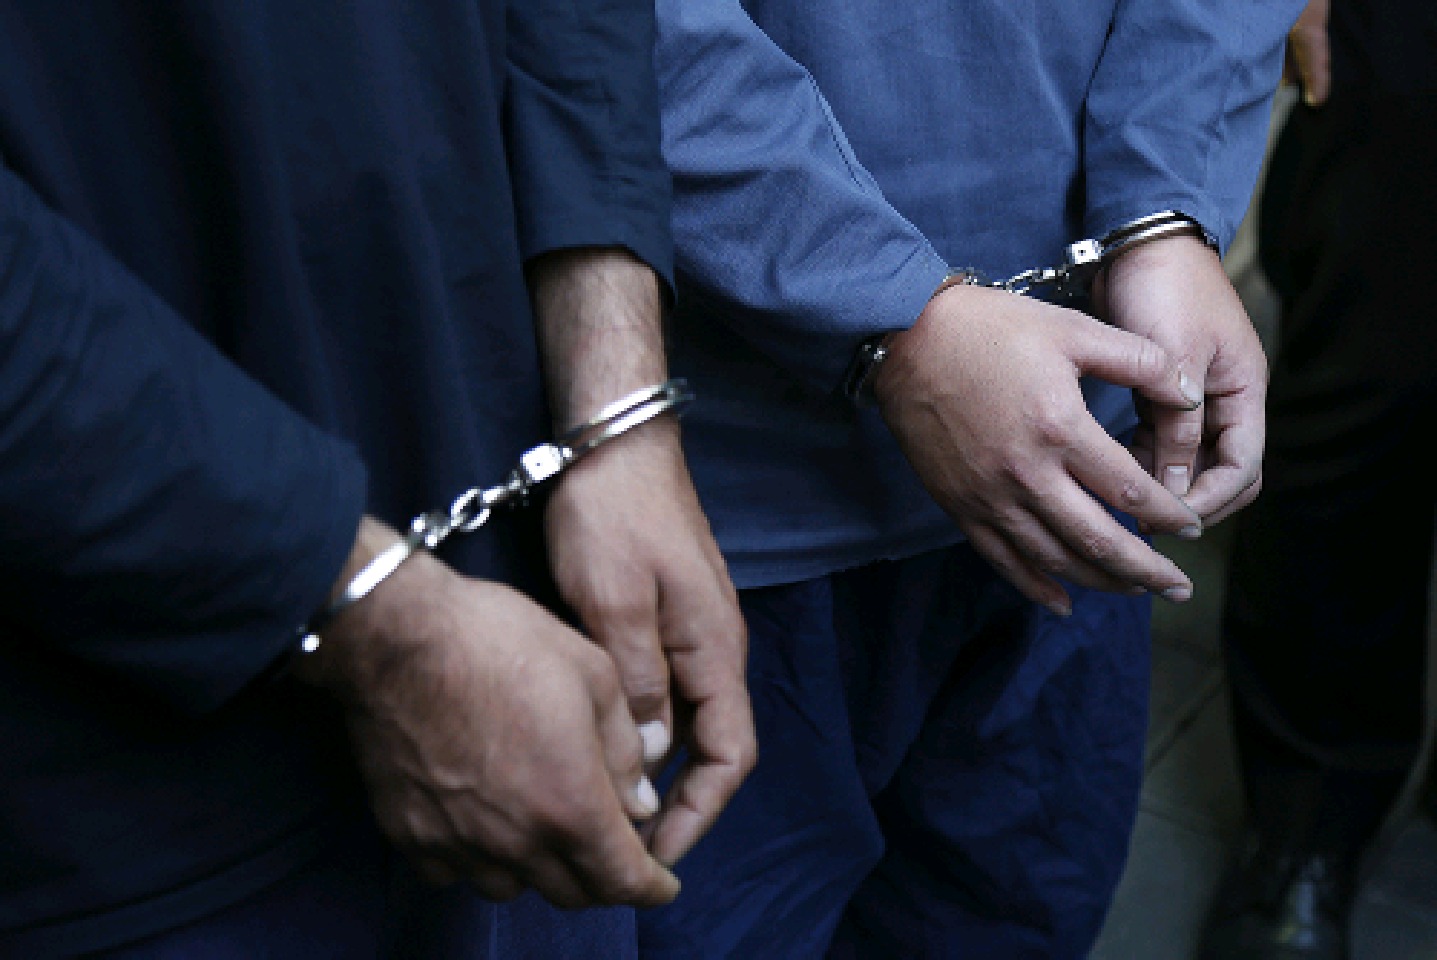 دستگیری سارق با 10 فقره سرقت در لاهيجان